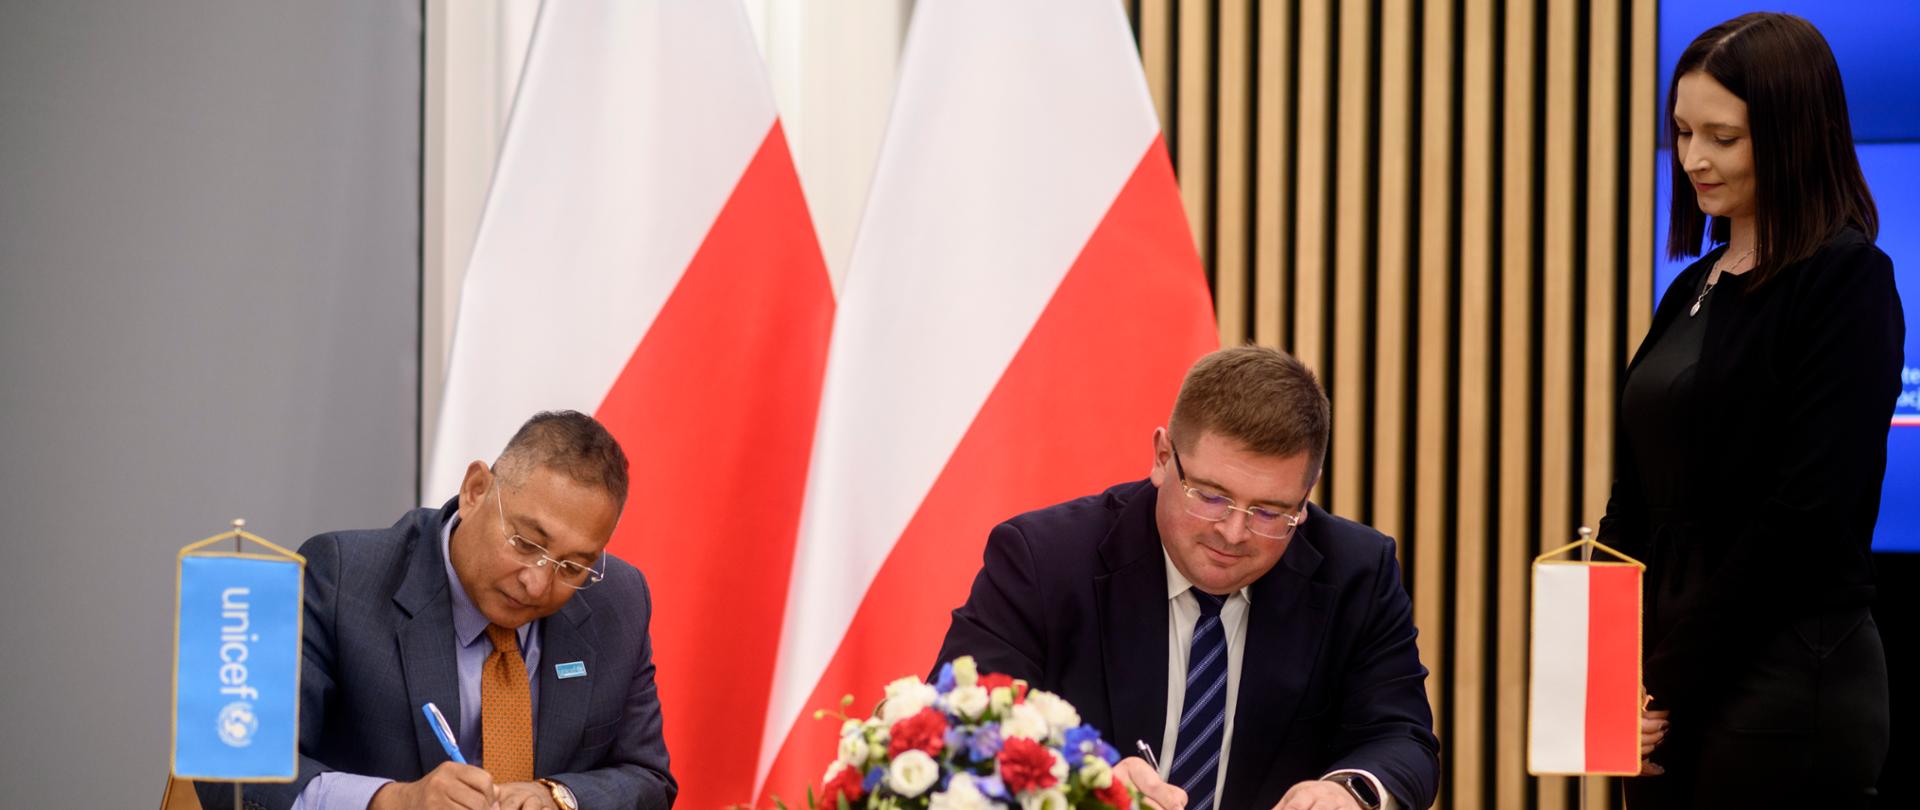 Przy stoliku siedzi wiceminister Rzymkowski i mężczyzna w garniturze, obaj podpisują dokumenty, nad nimi stoi kobieta w czarnym ubraniu, za nimi kilka polskich flag.